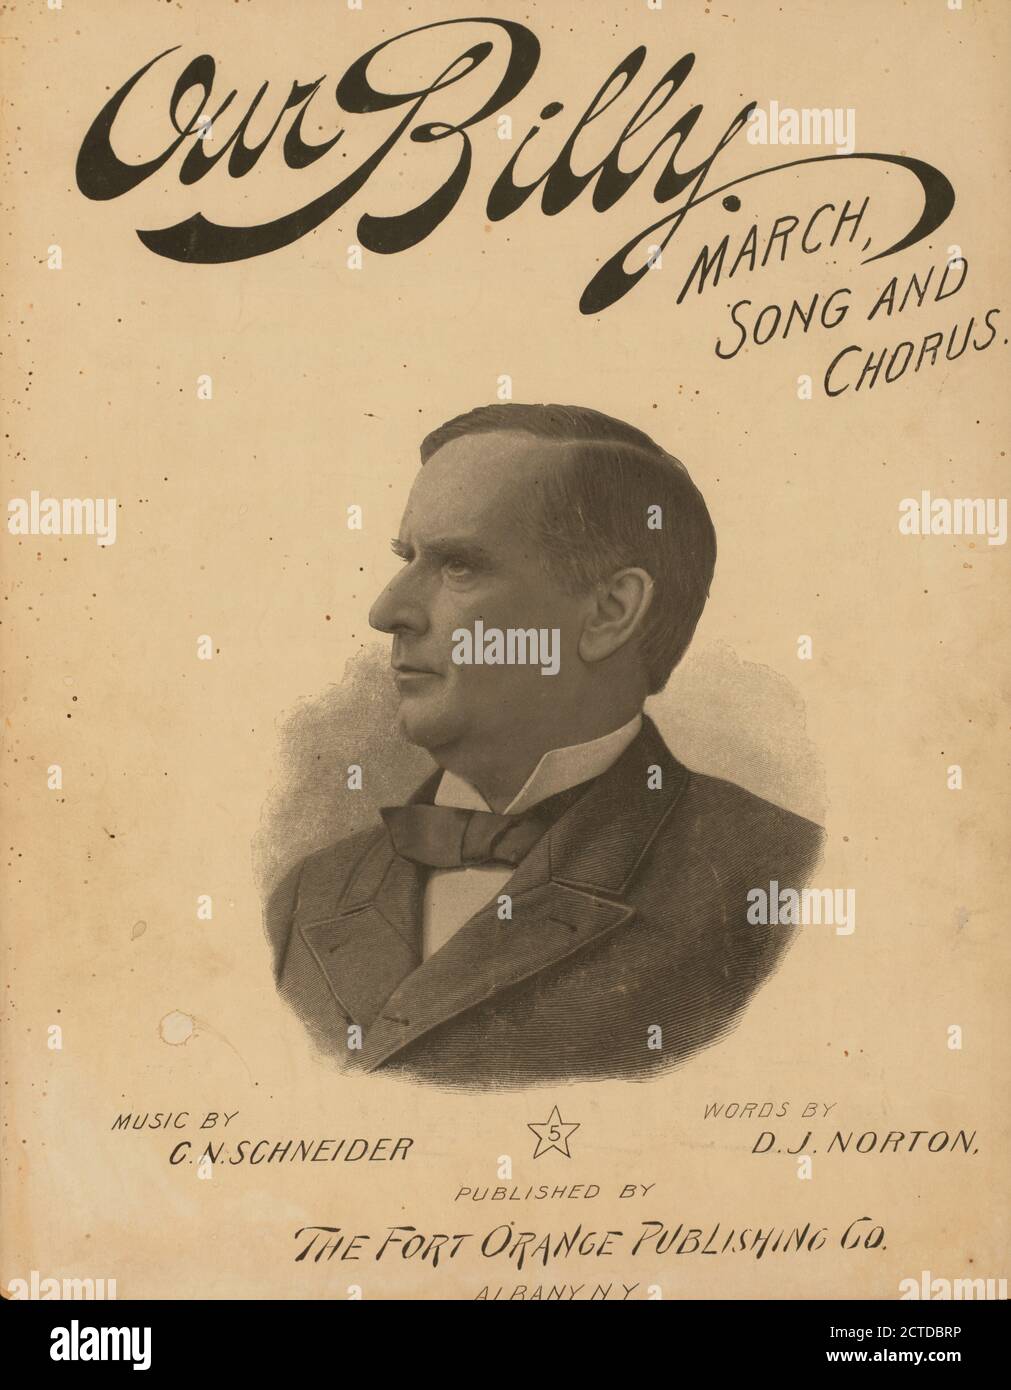 Il nostro Billy : canto e coro di marzo, immagine fissa, spartiti, 1896, Schneider, C. N., Norton, D. J Foto Stock